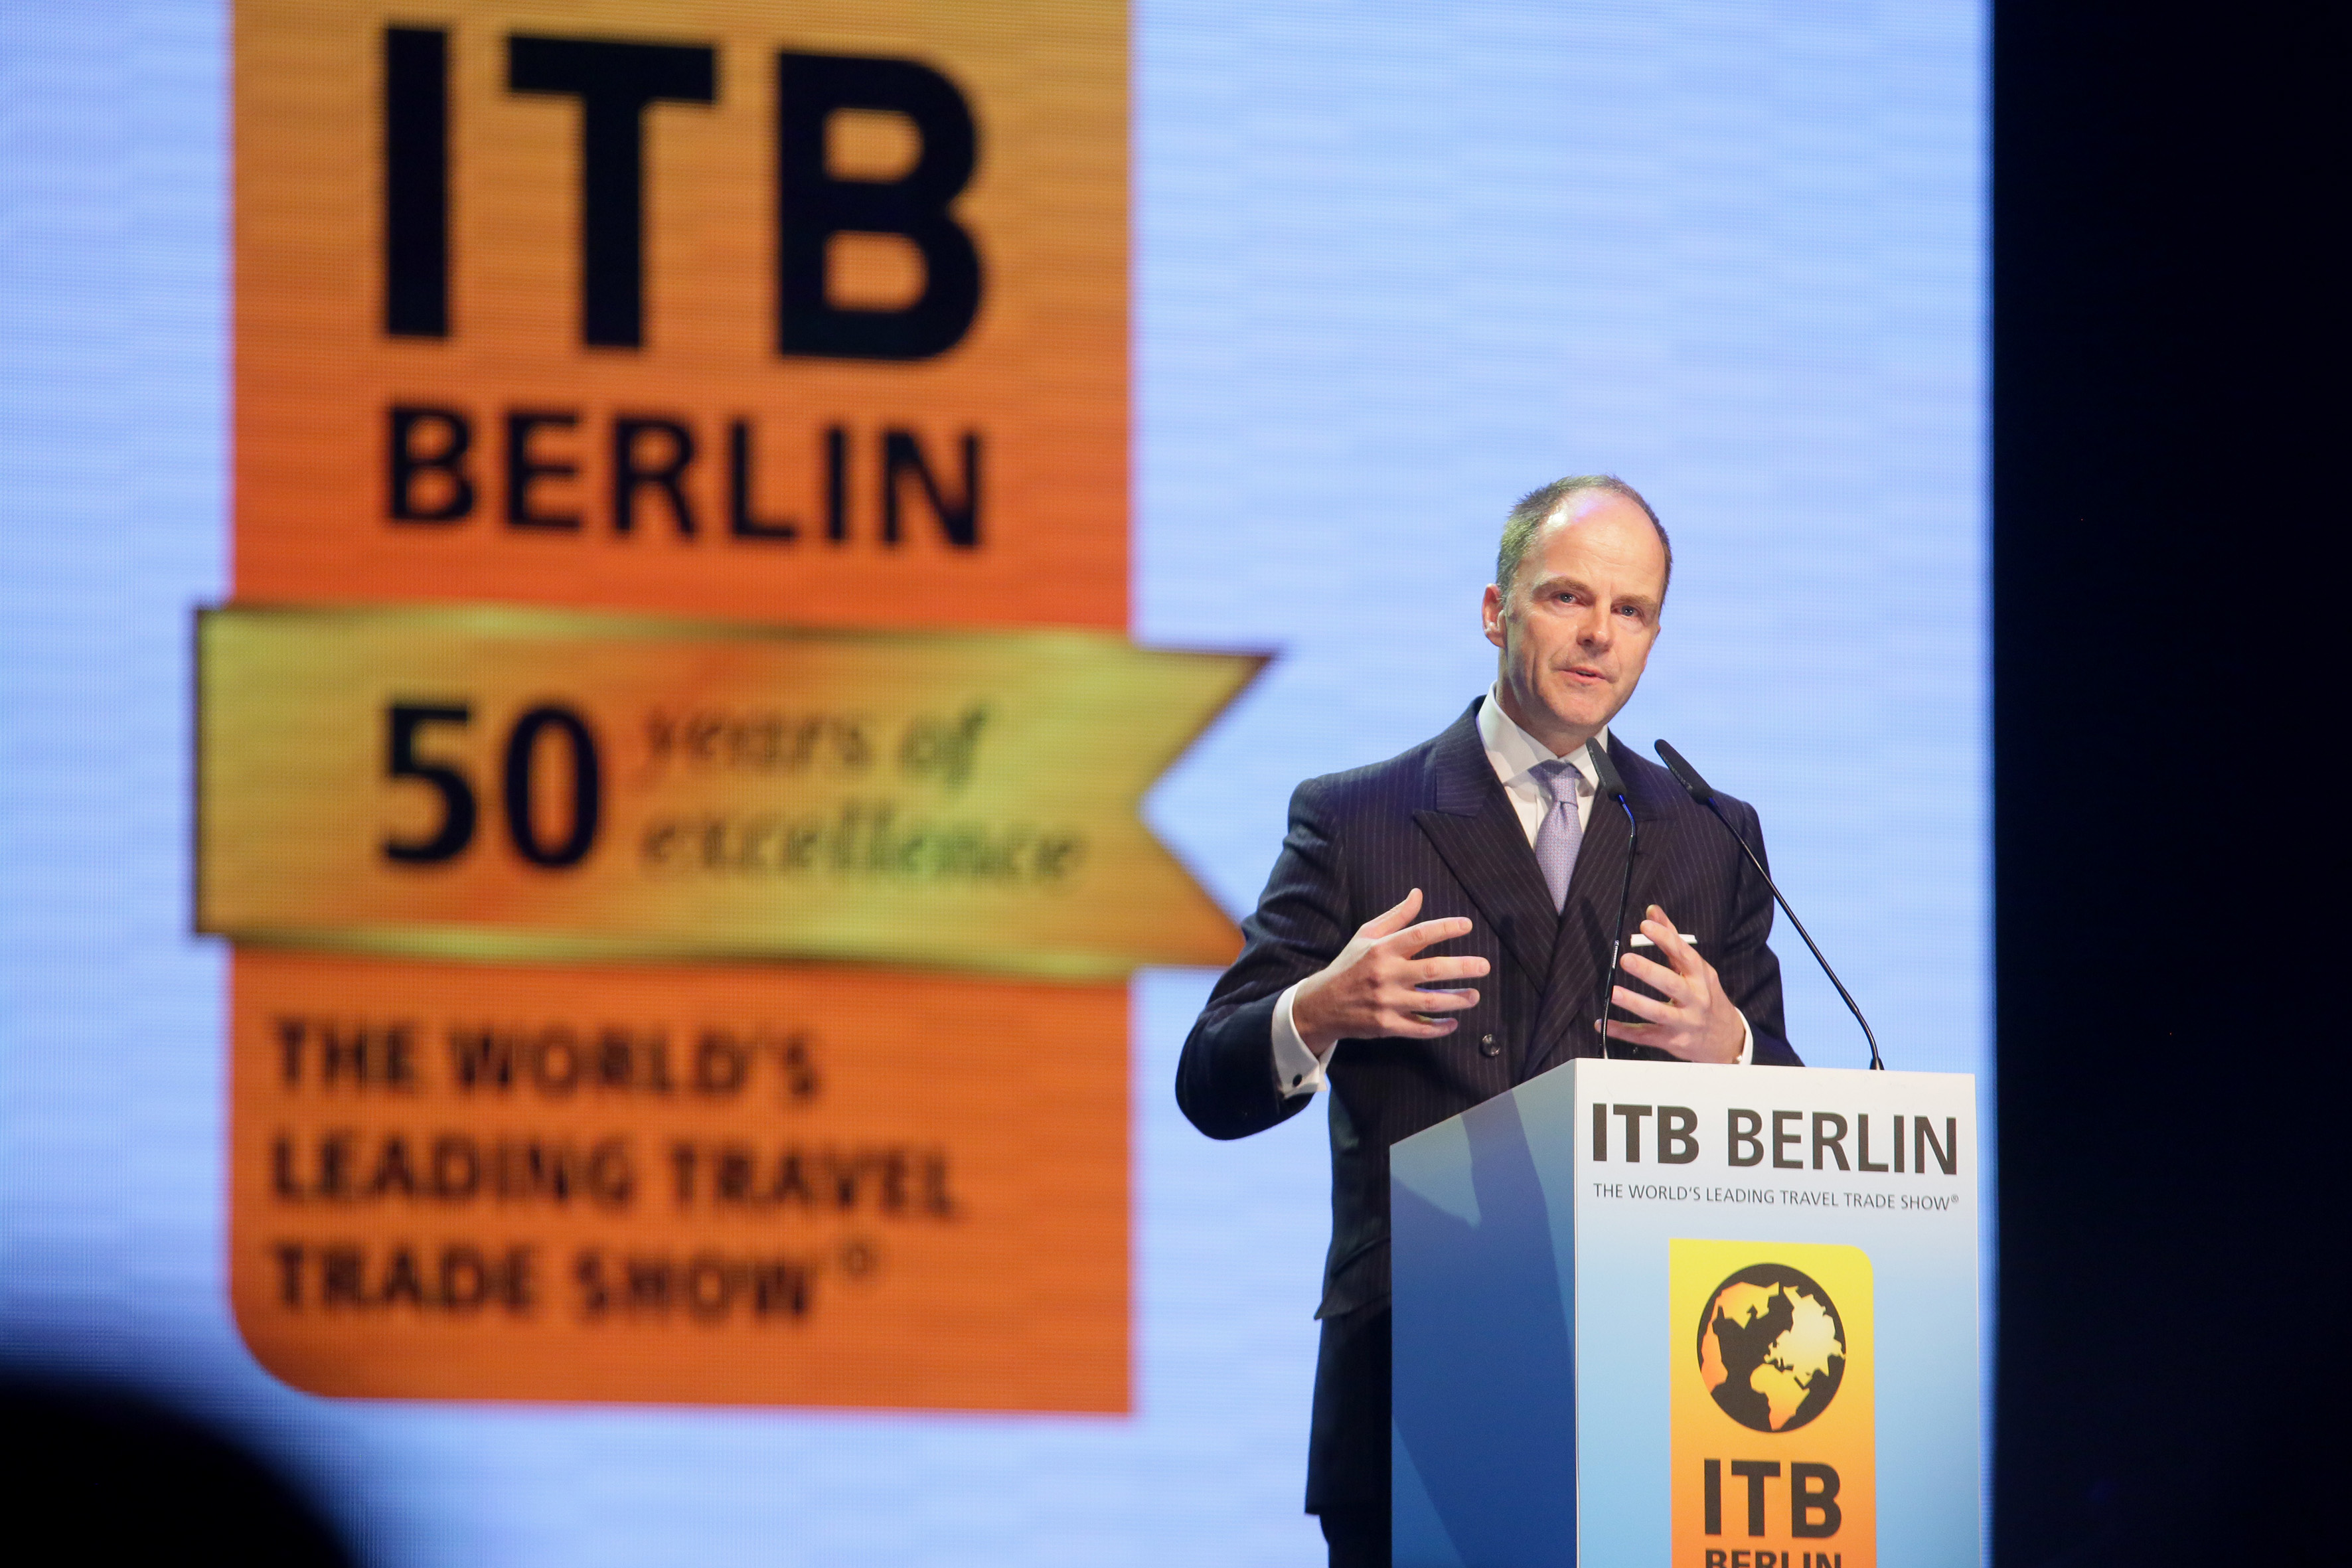 ITB Berlin 2016 - Eröffnungsfeier - Dr. Christian Göke, Vorsitzender der Geschäftsführung, Messe Berlin GmbH. Quelle: http://www.itb-berlin.de/Presse/Pressefotos/